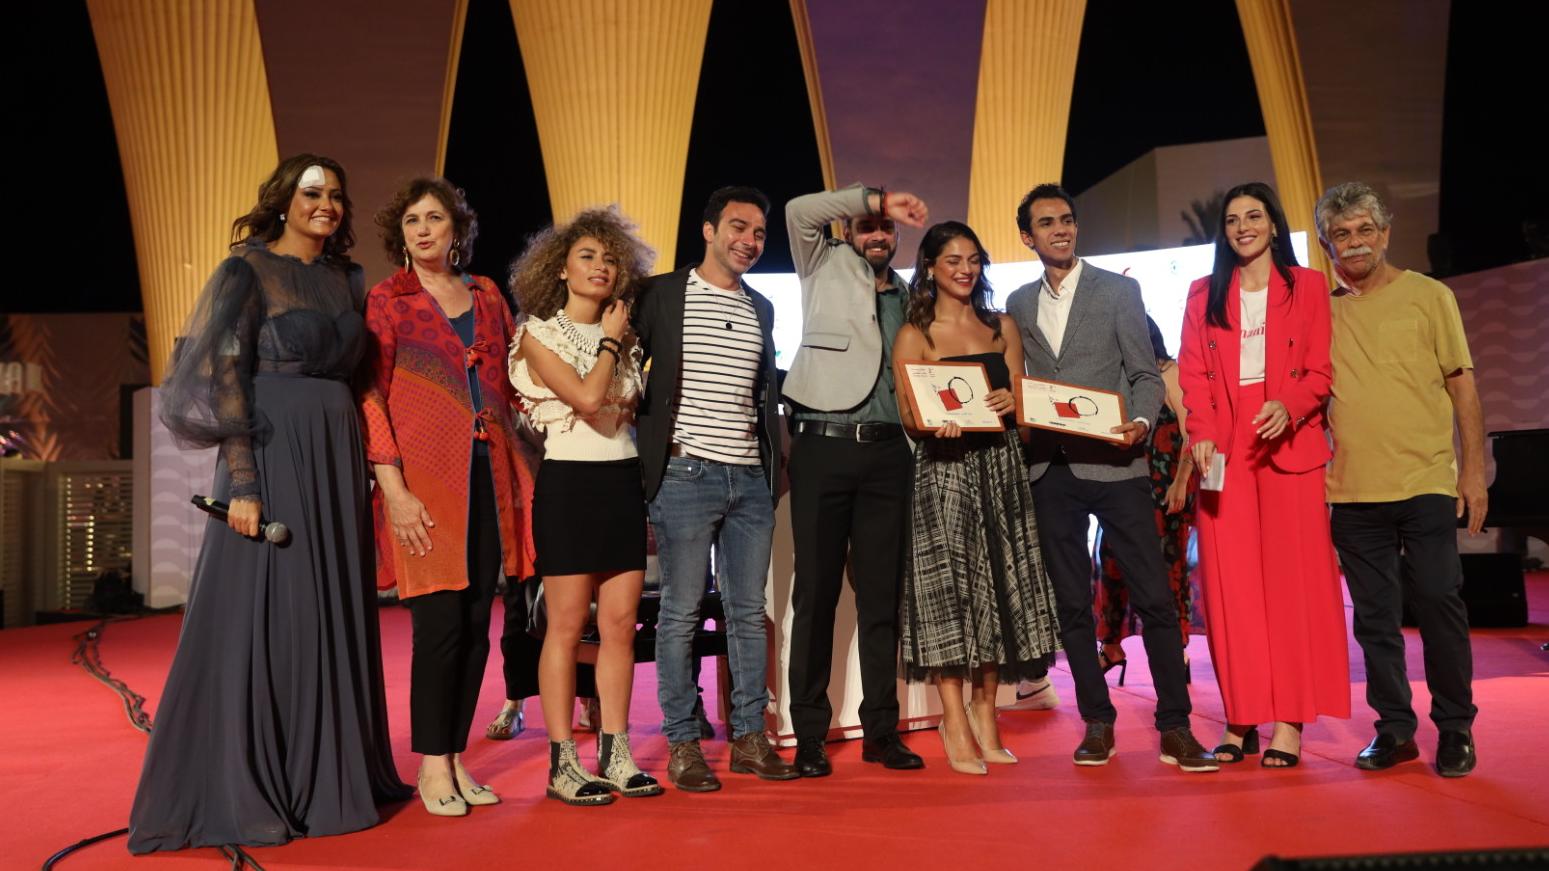 الفائزين بجوائز المنصة مع مدير المهرجان إنتشال التميمي ورئيسة عمليات المهرجان بشرى رزة 